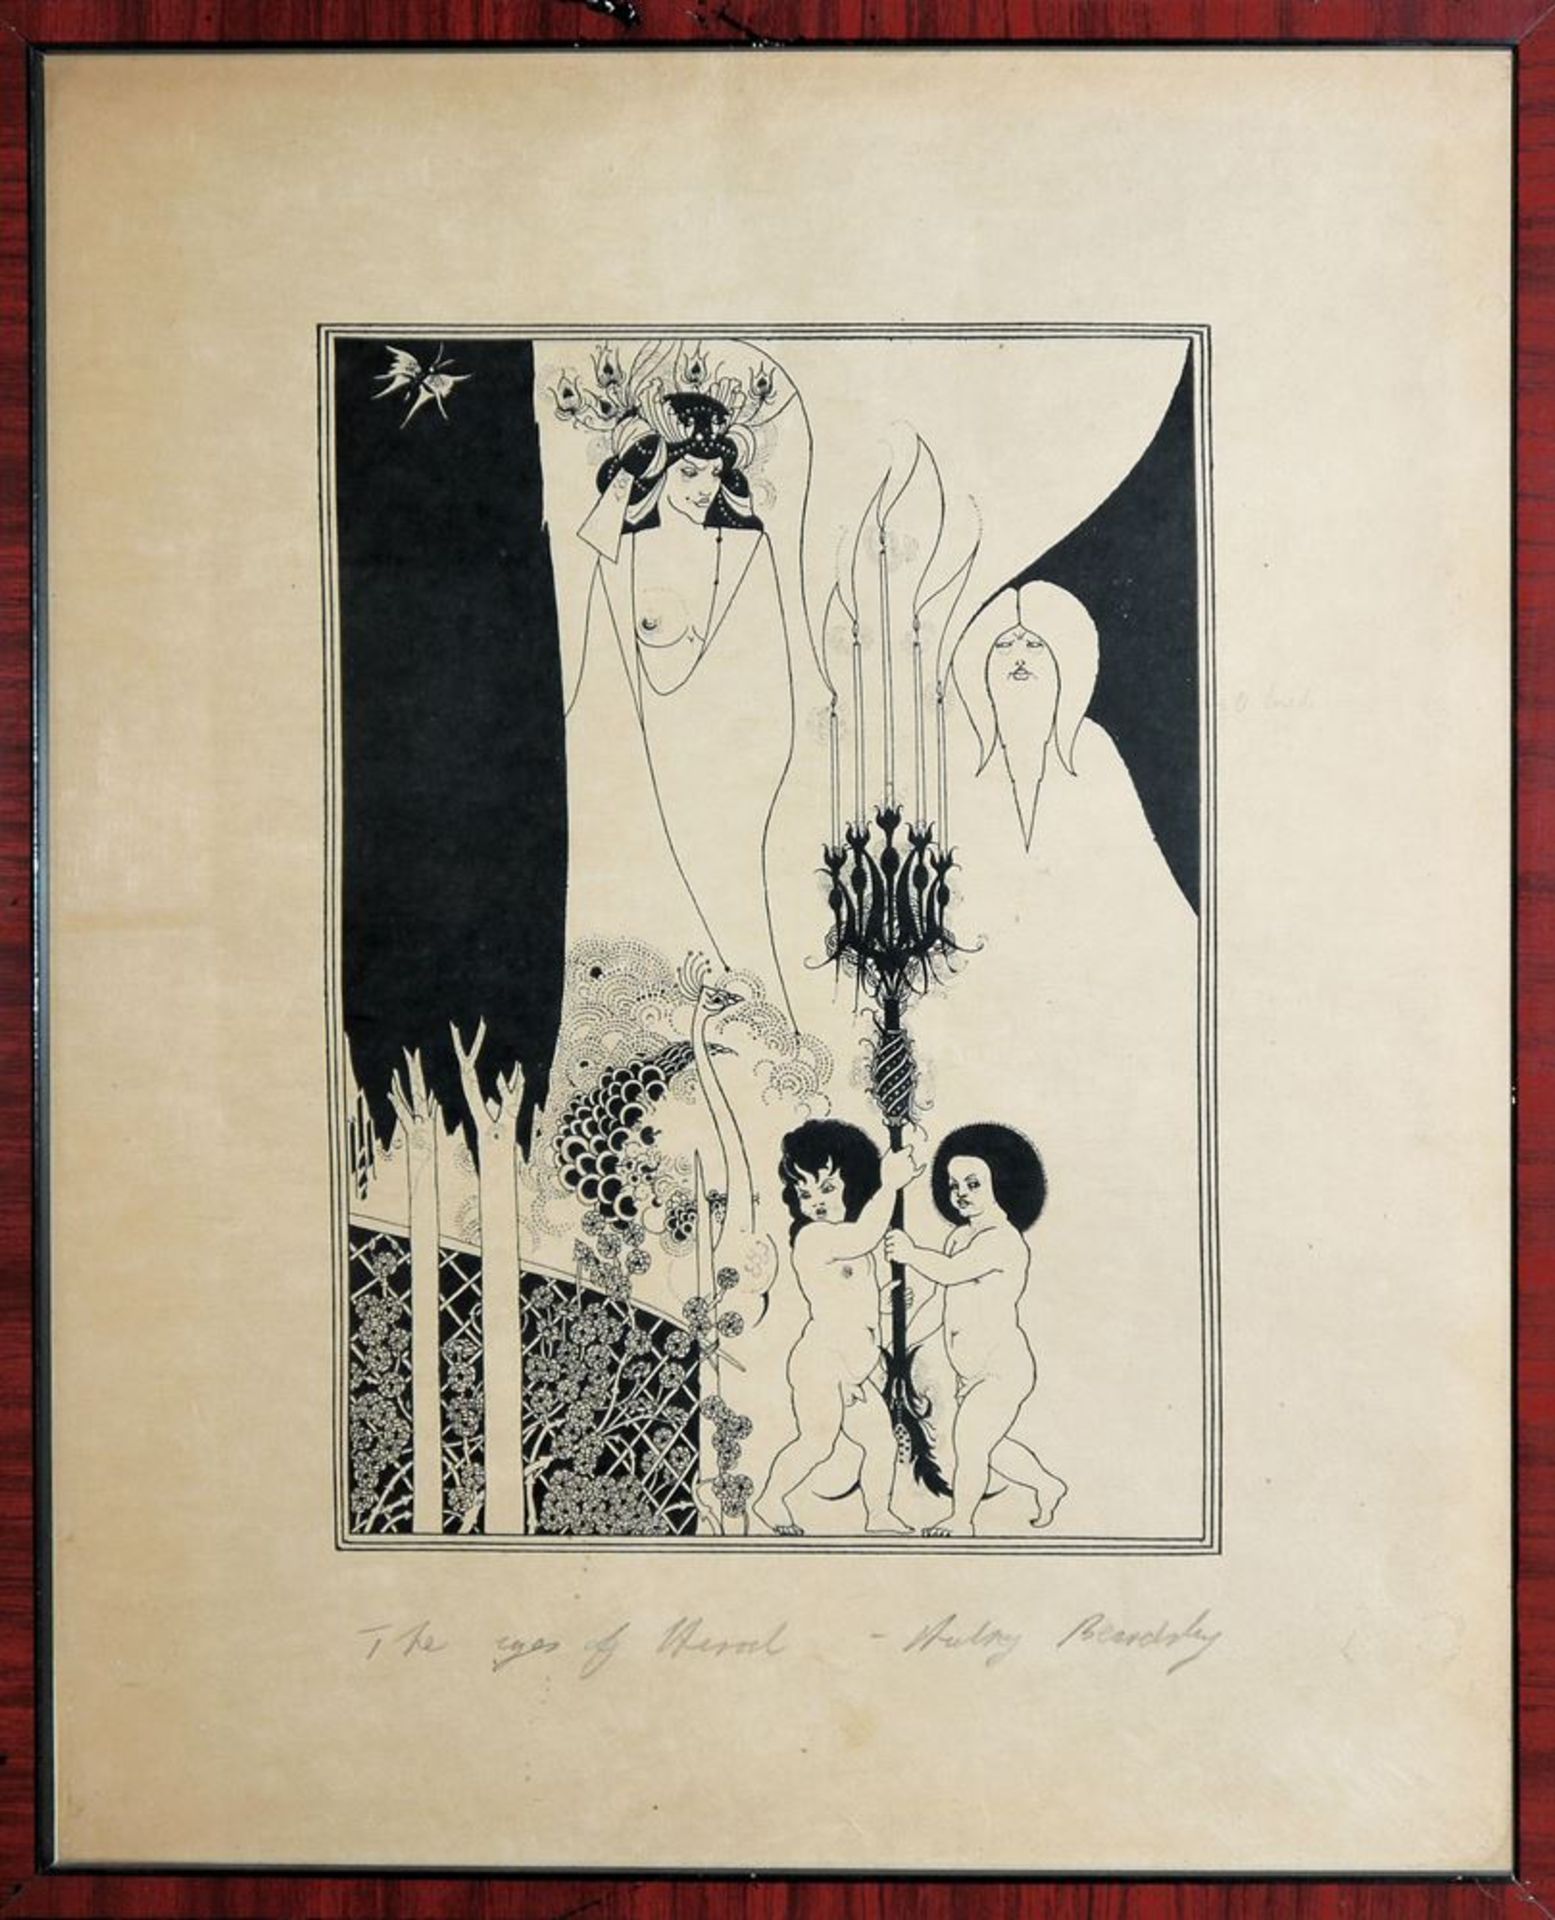 Aubrey Beardsley, "The eyes of Herod" and "The Stomach Dance", zincätints, framed - Image 2 of 3